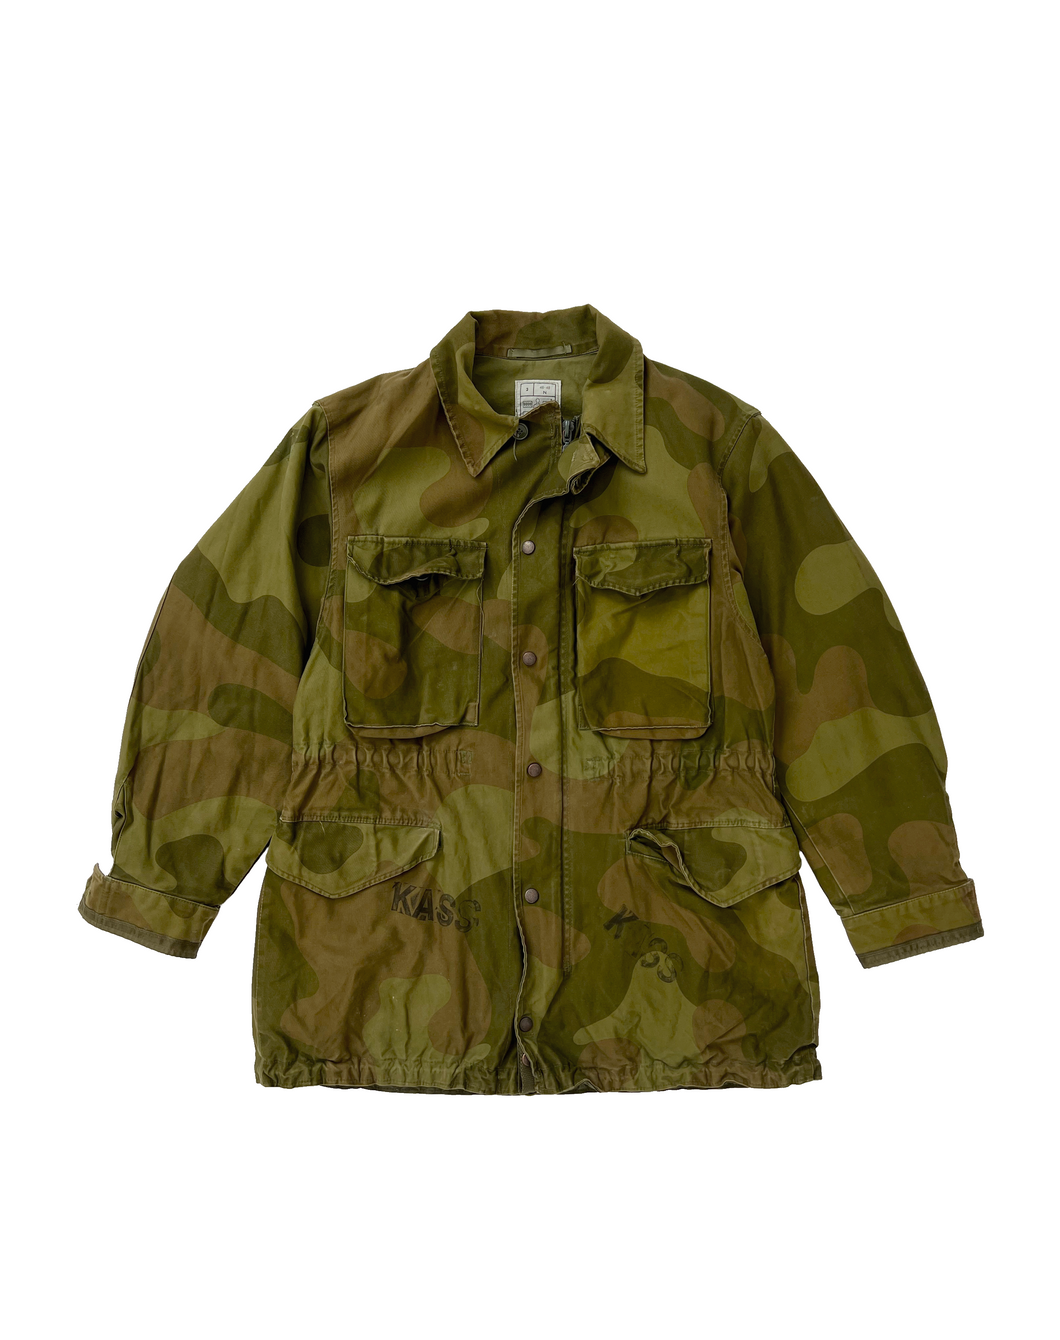 Vintage Army Camp Field Jacket